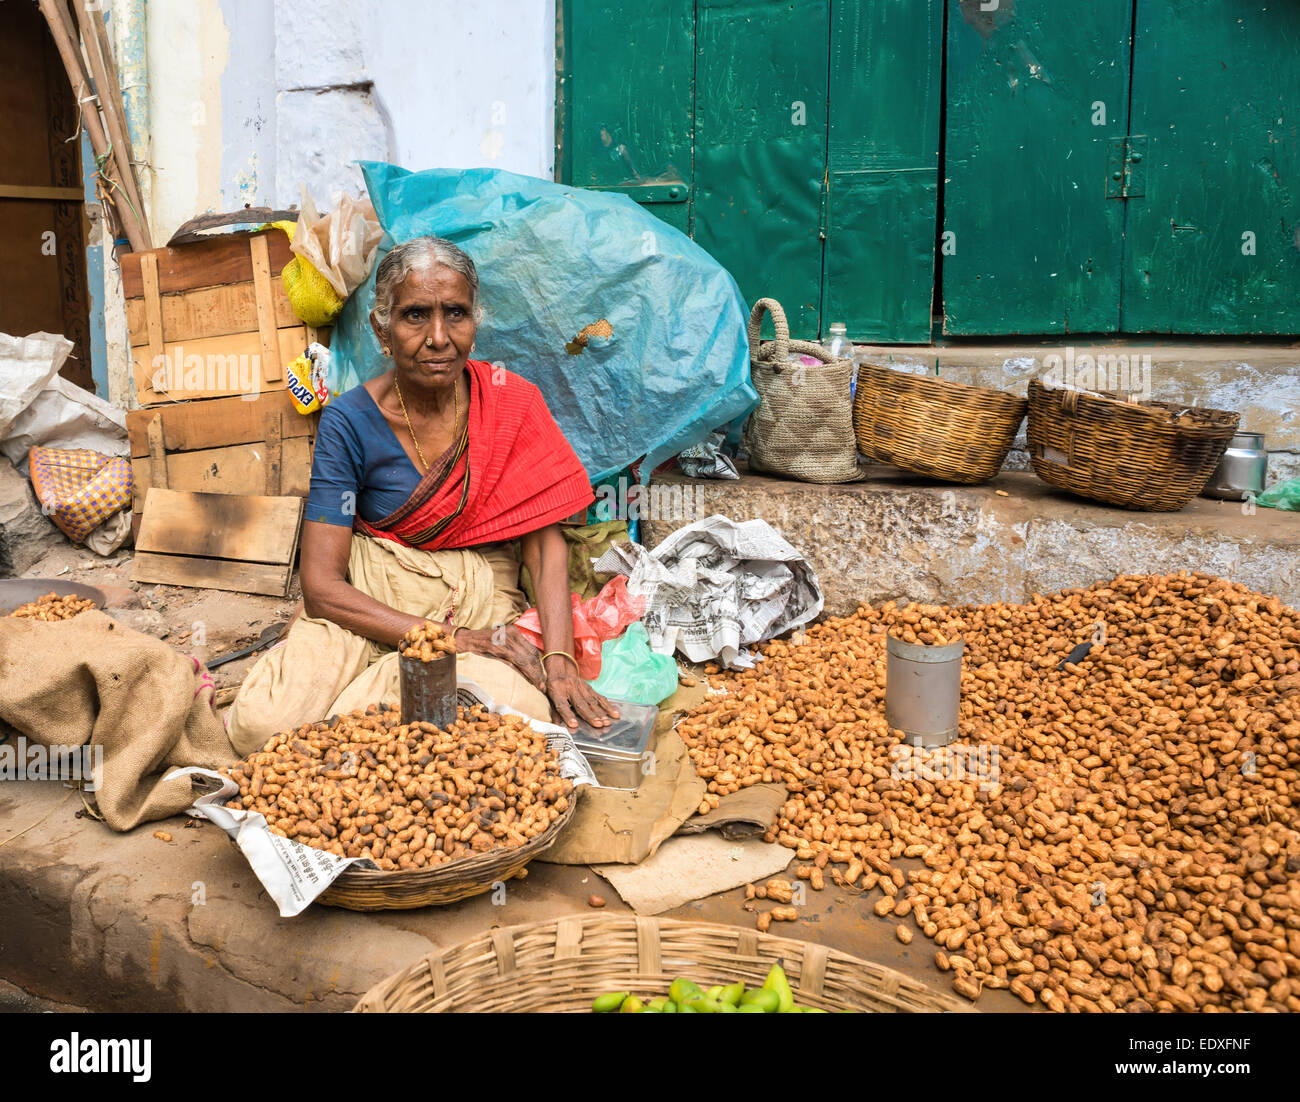 THANJAVOUR, India - 14 febbraio: una donna non identificato nel tradizionale abbigliamento indiano vende noccioline. La donna trattiene il denaro. India, Tam Foto Stock